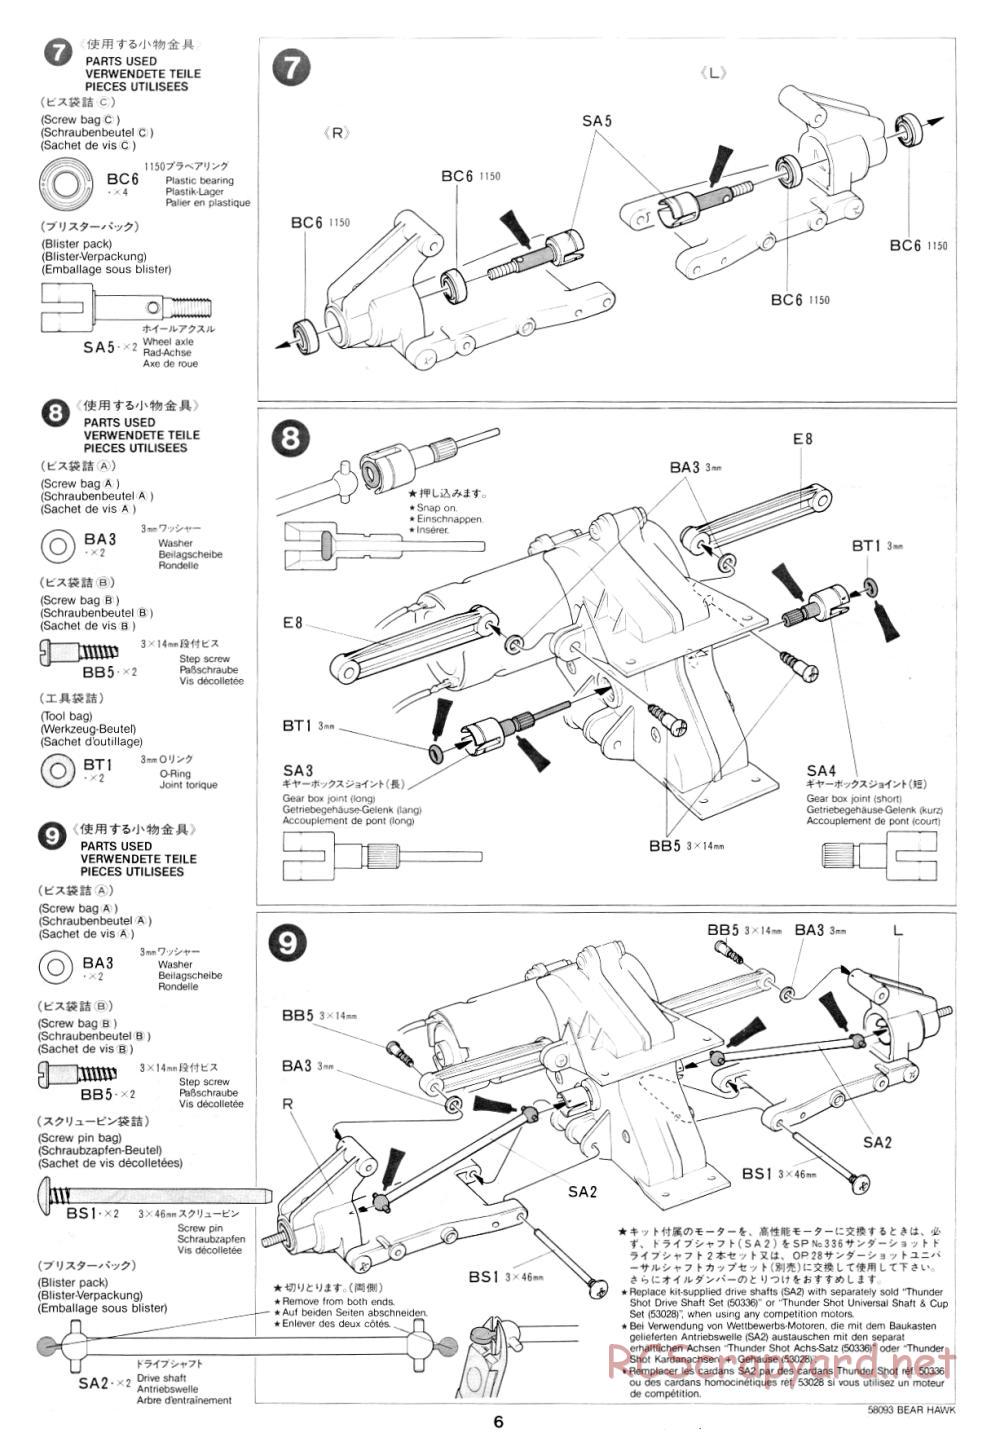 Tamiya - Bear Hawk - 58093 - Manual - Page 6